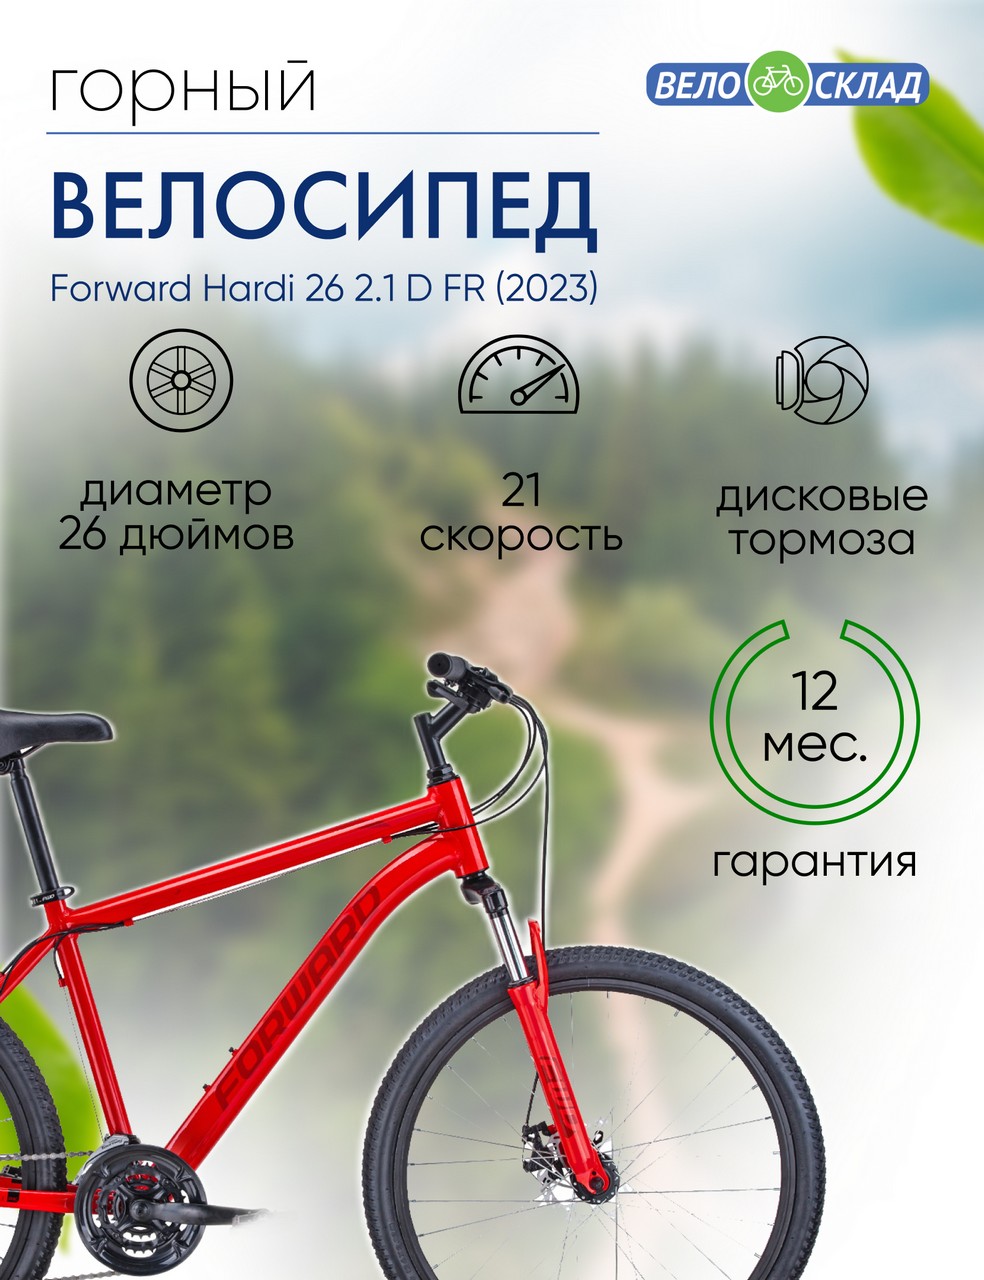 Горный велосипед Forward Hardi 26 2.1 D FR, год 2023, цвет Красный, ростовка 18